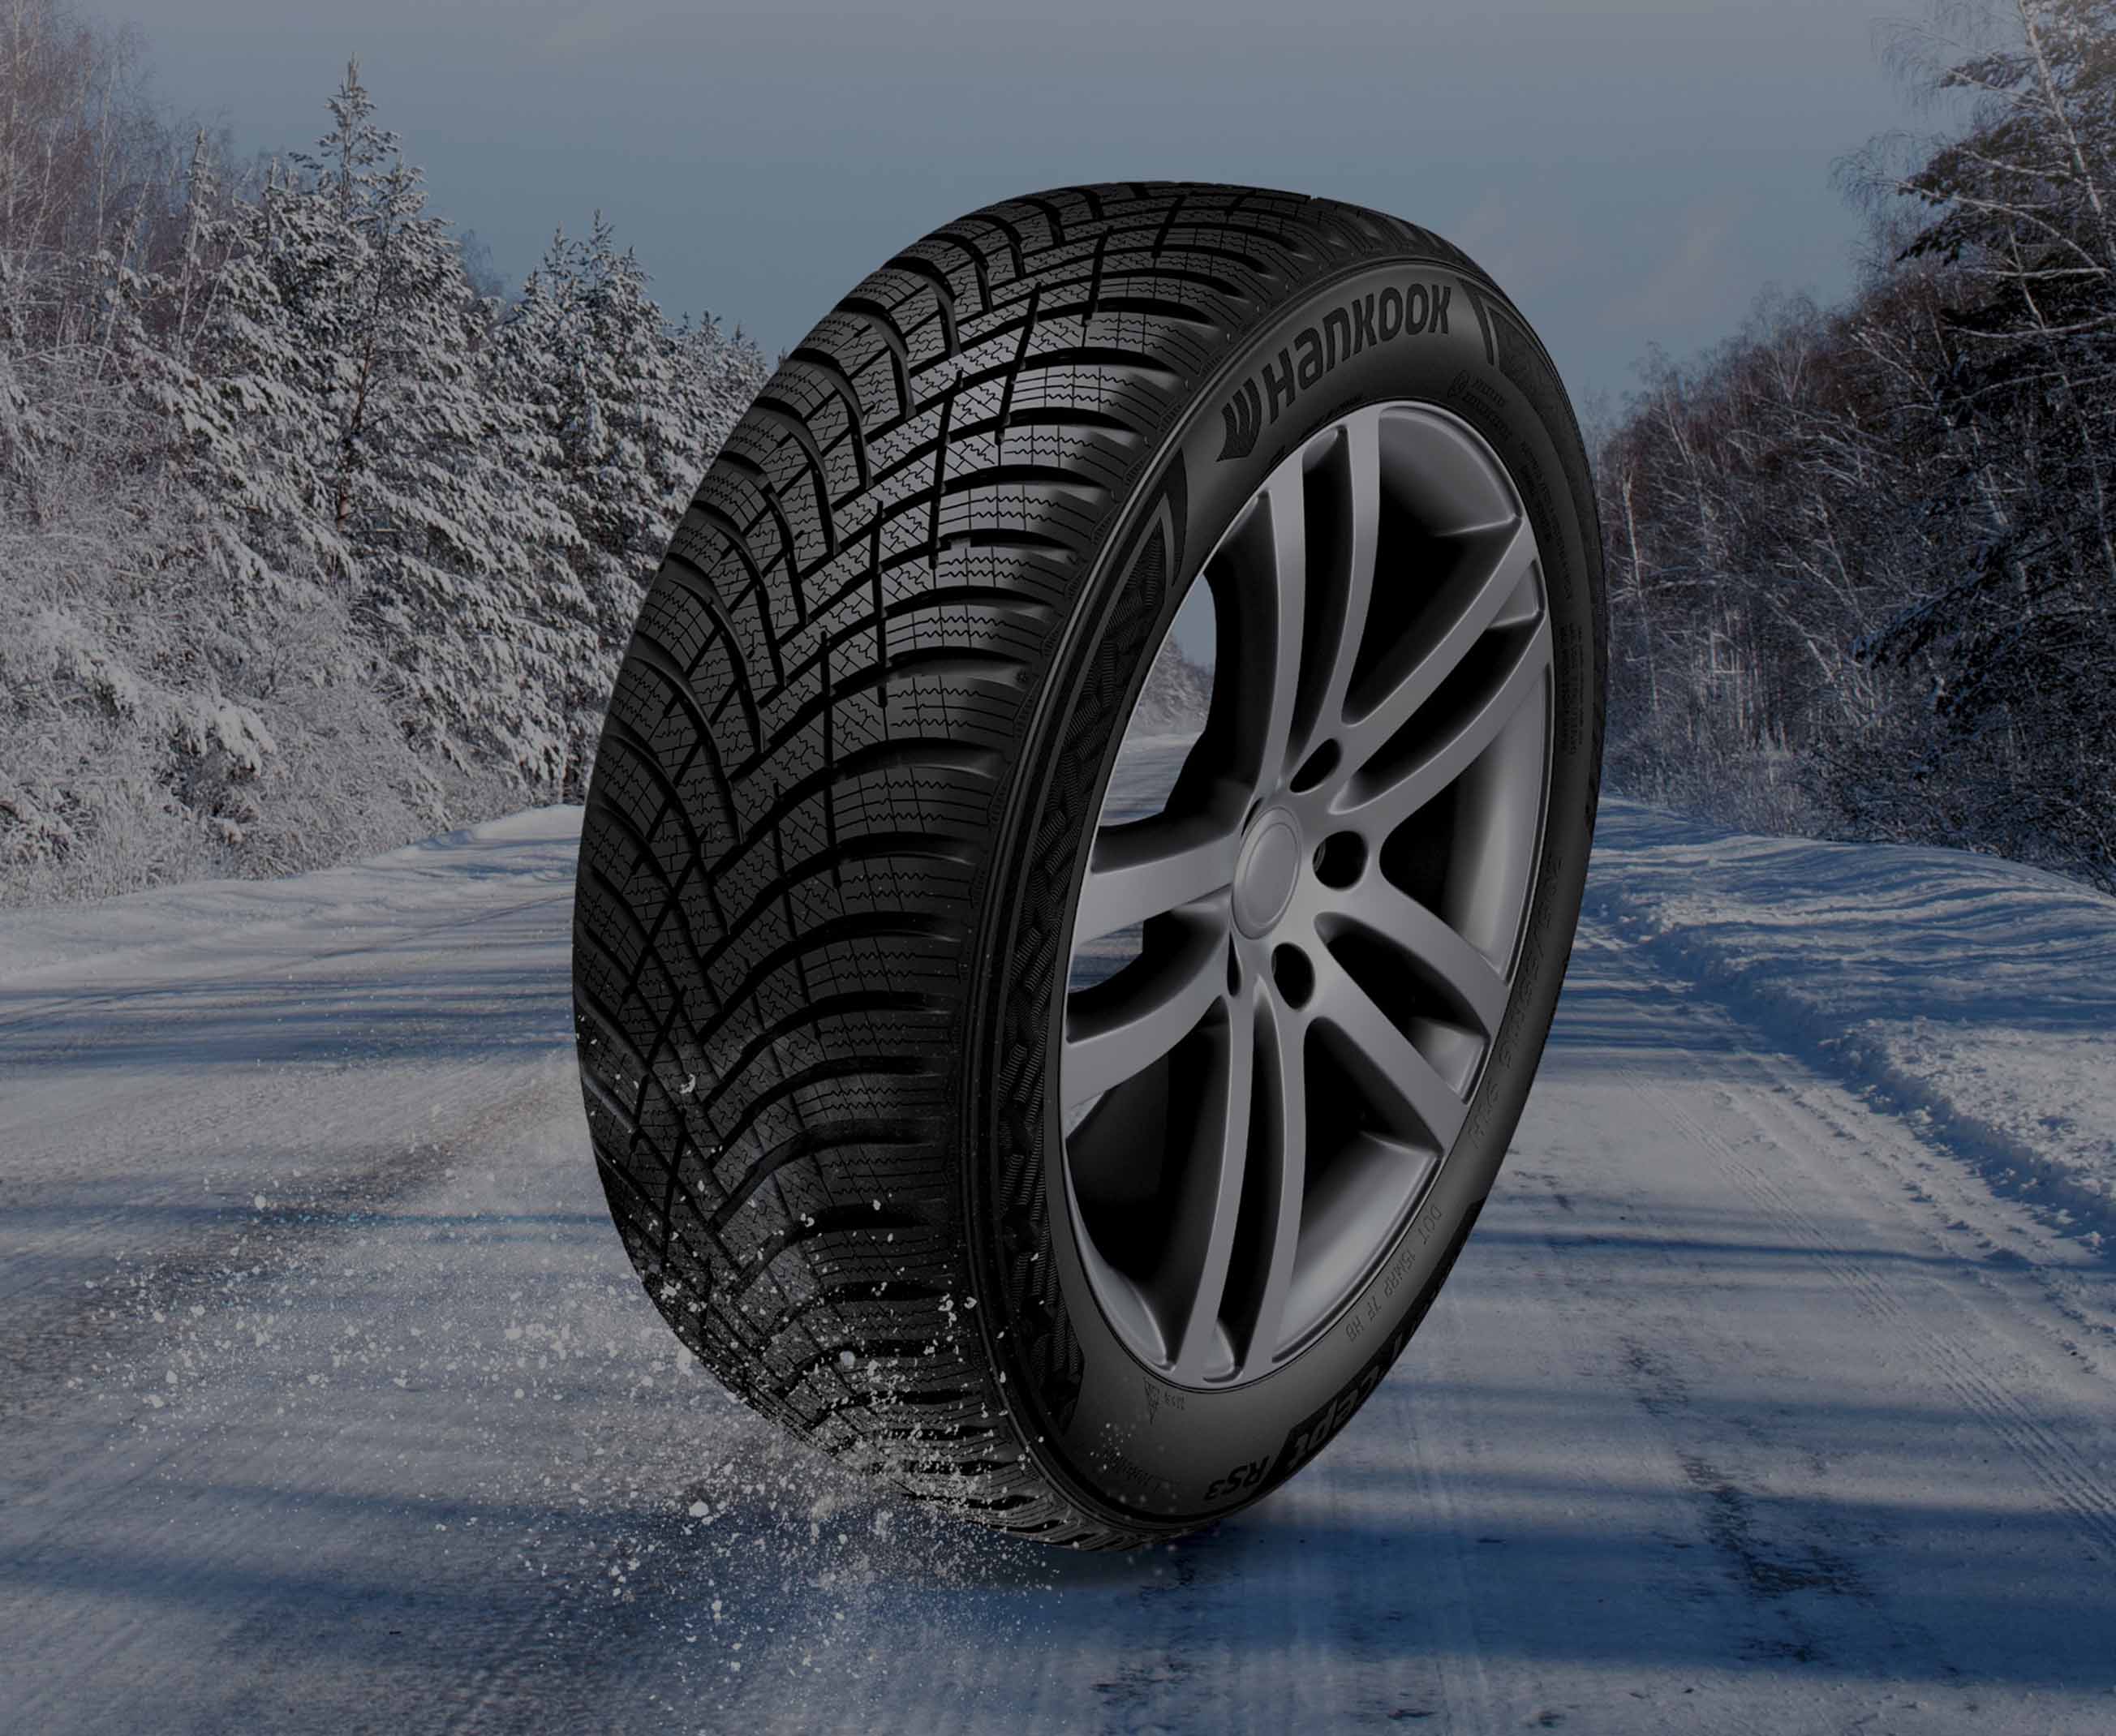 Winter i cept RS3 W462 - Winter i cept | Hankook Tire Deutschland